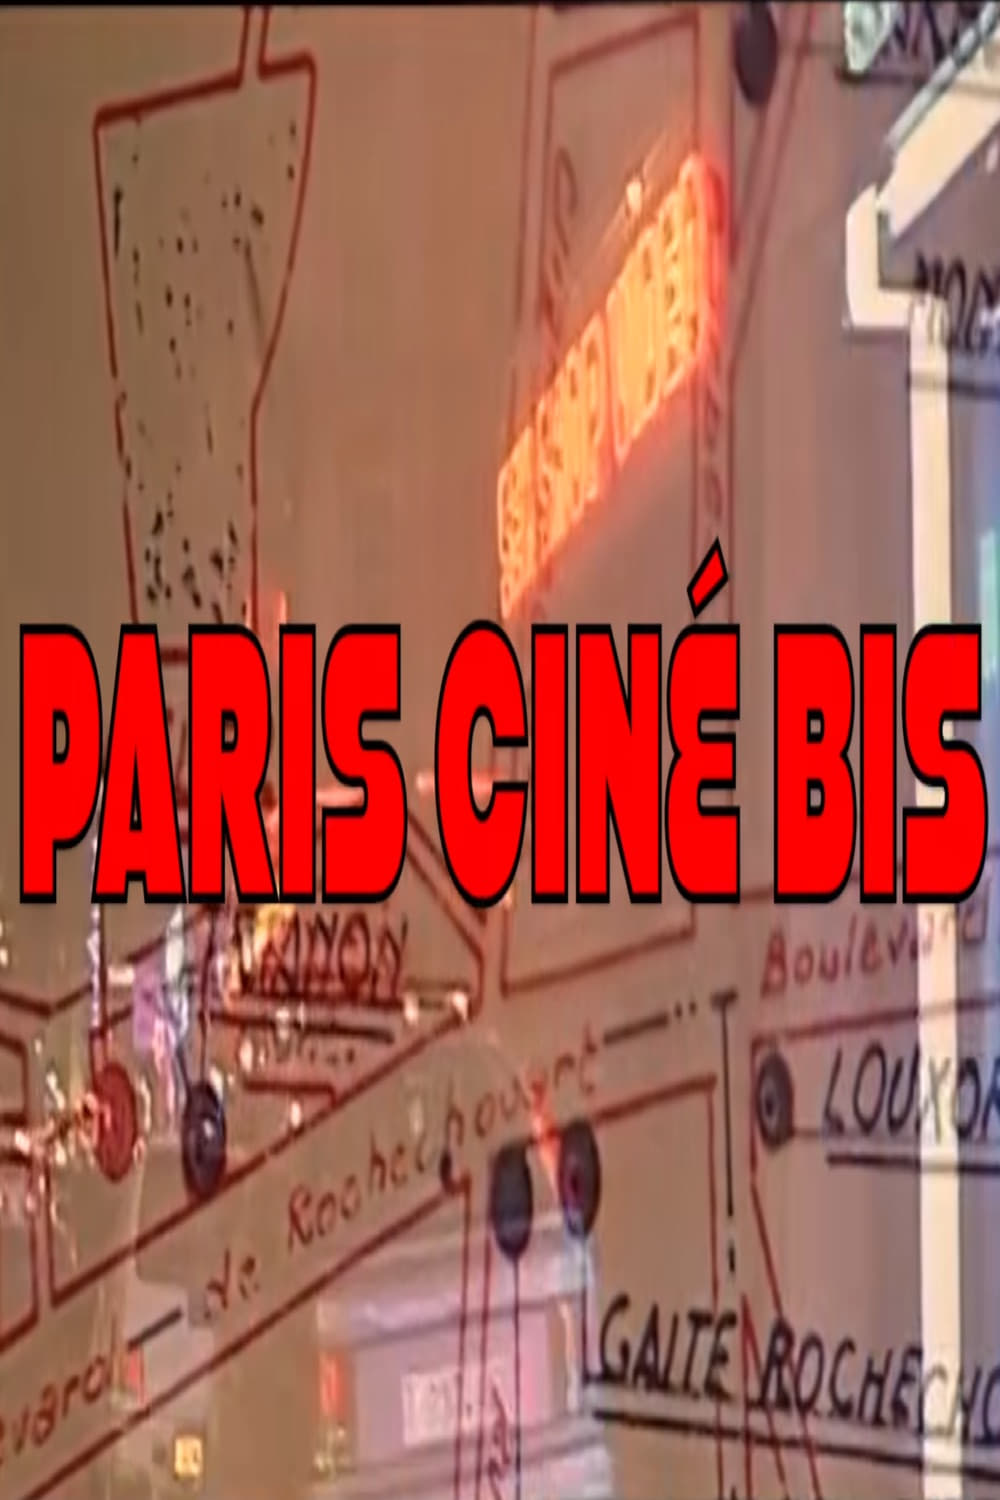 Paris ciné bis